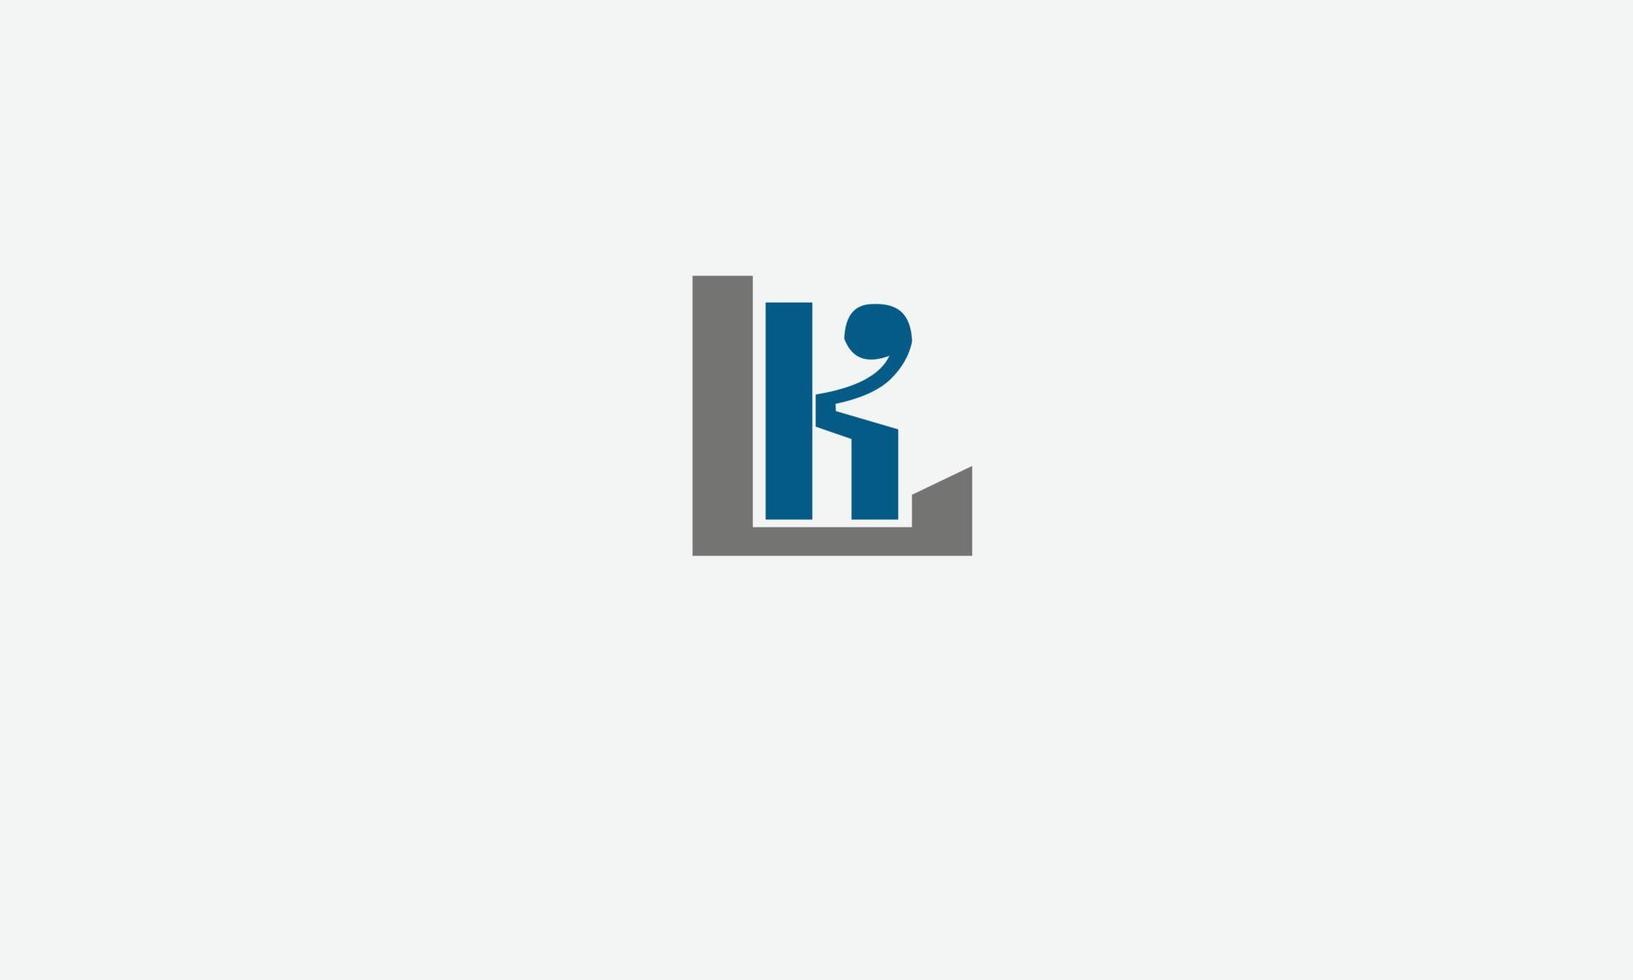 letras del alfabeto iniciales monograma logo kl, lk, k y l vector